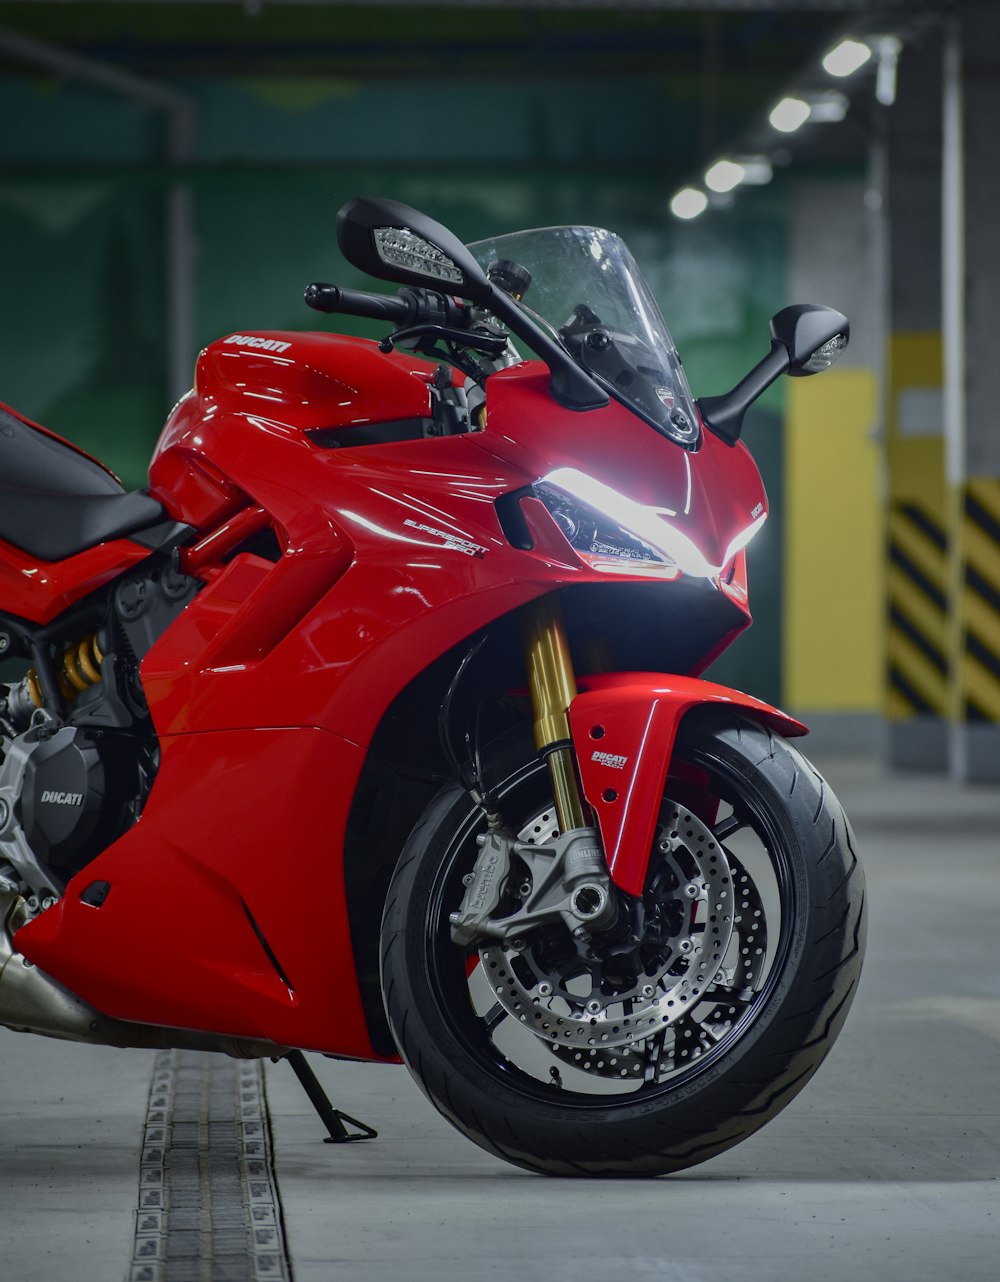 Ein rotes Motorrad, das in einer Garage geparkt ist